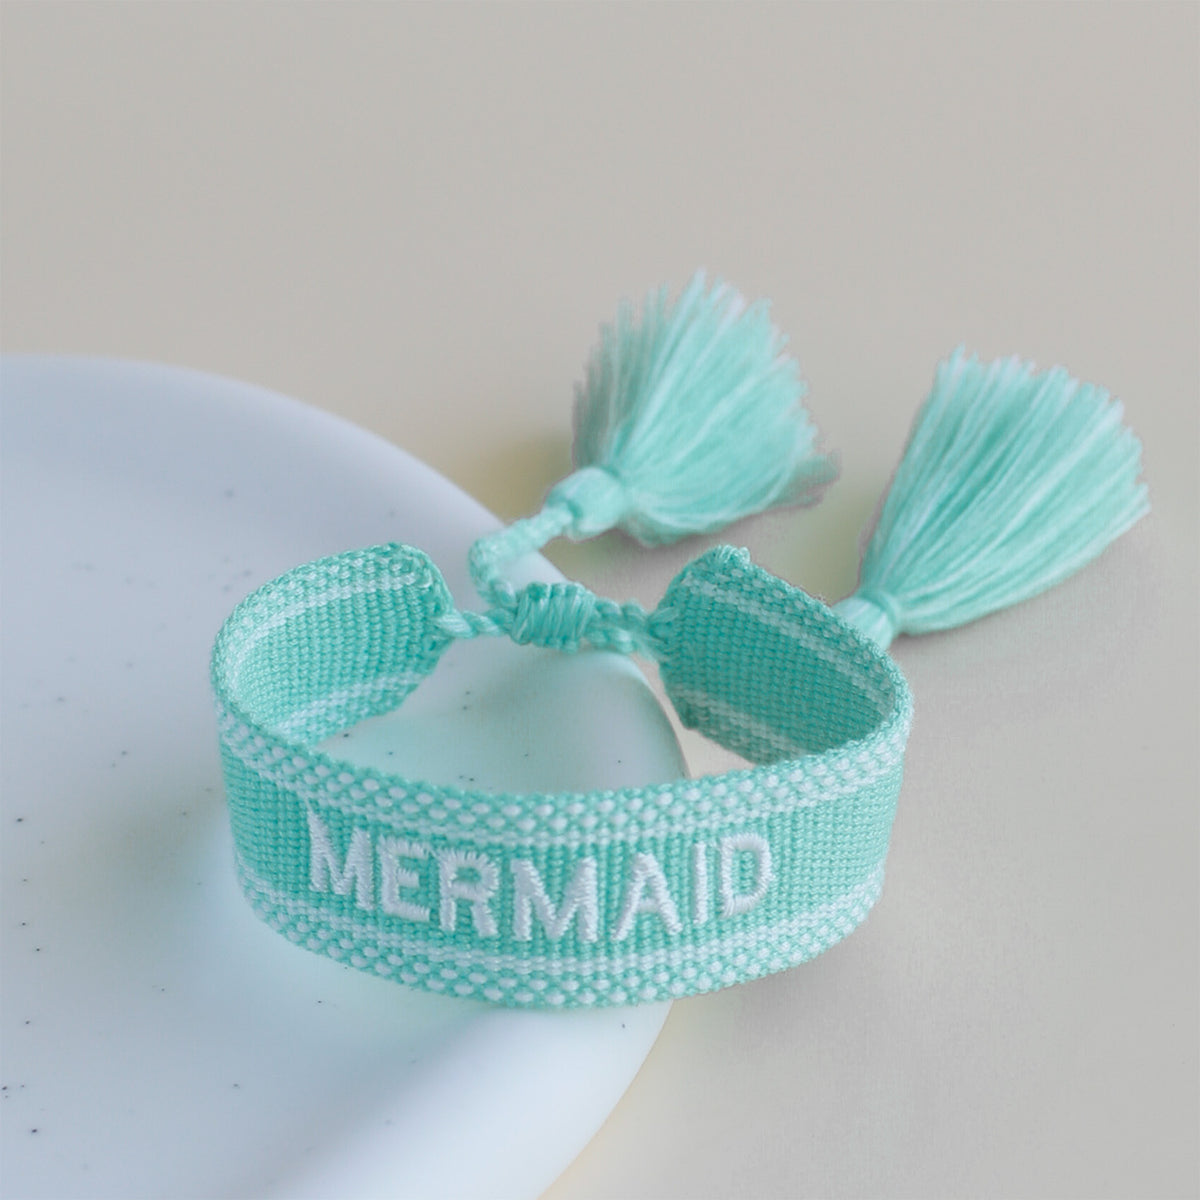 disney-parks-fan-woven-tassel-bracelet-mermaid-teal-white-embroidery